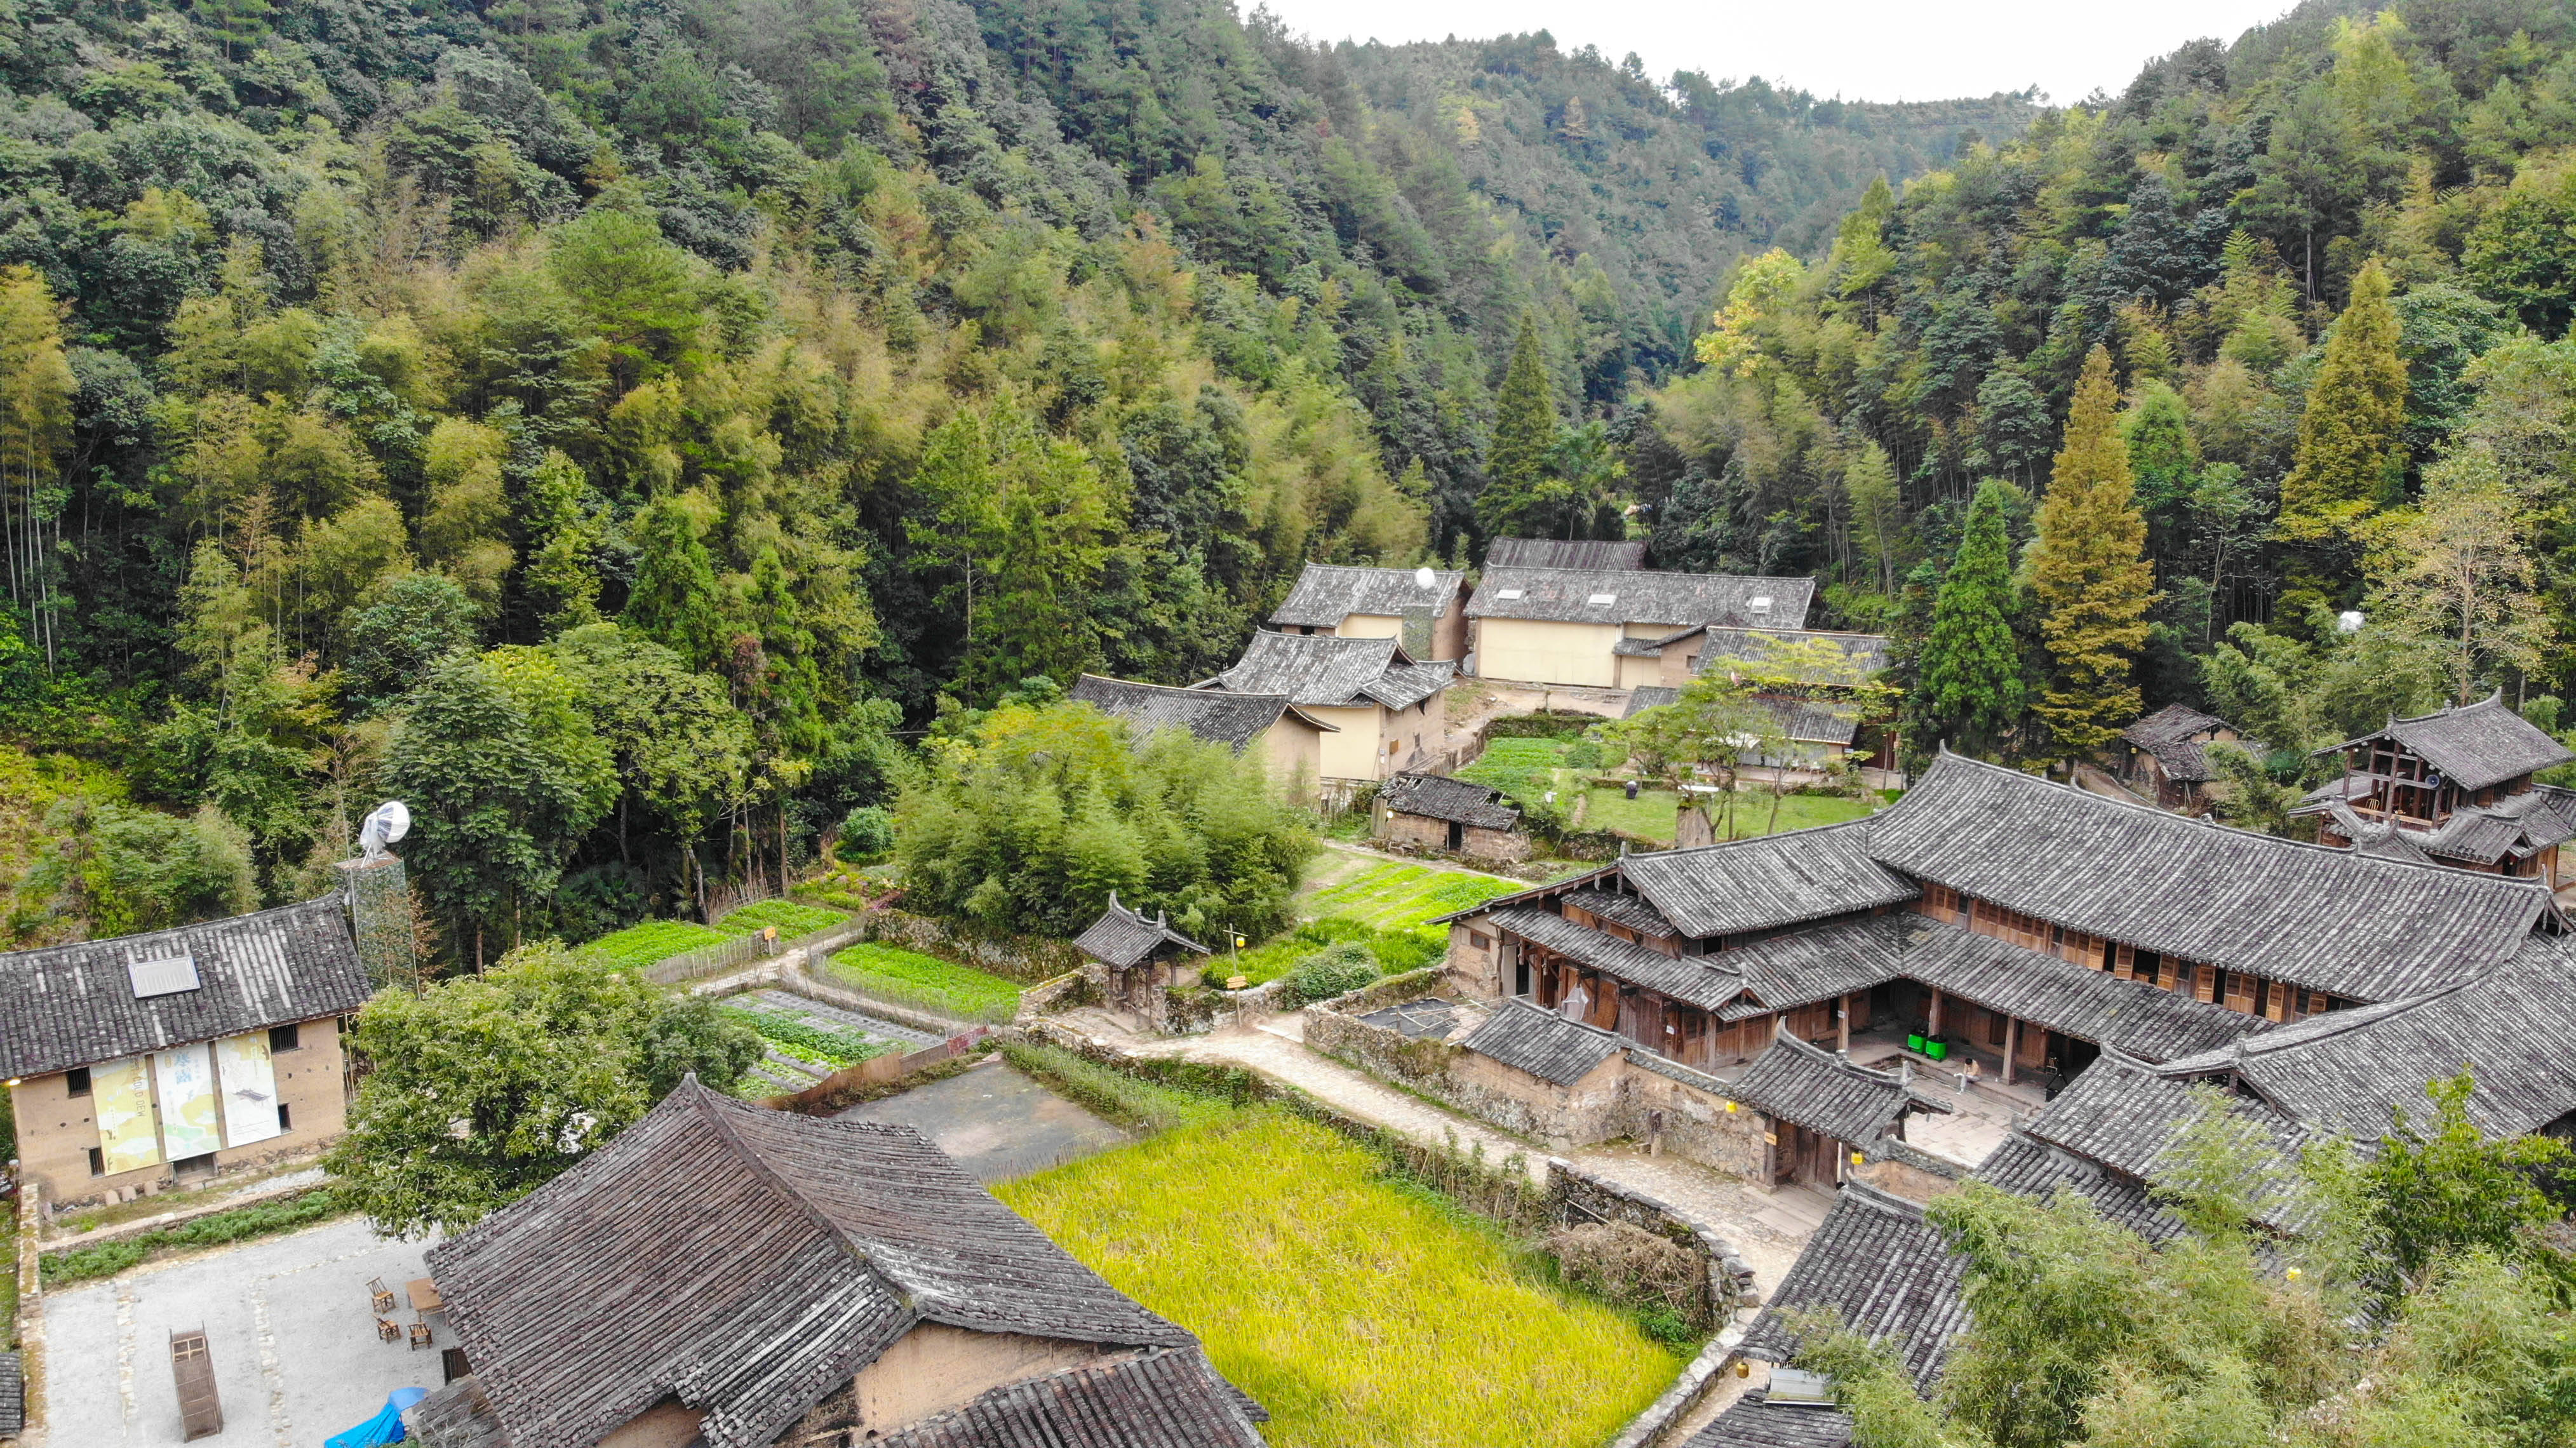 徐岙底,位于泰顺的筱村镇,是泰顺县保存最完整的古村落之一.